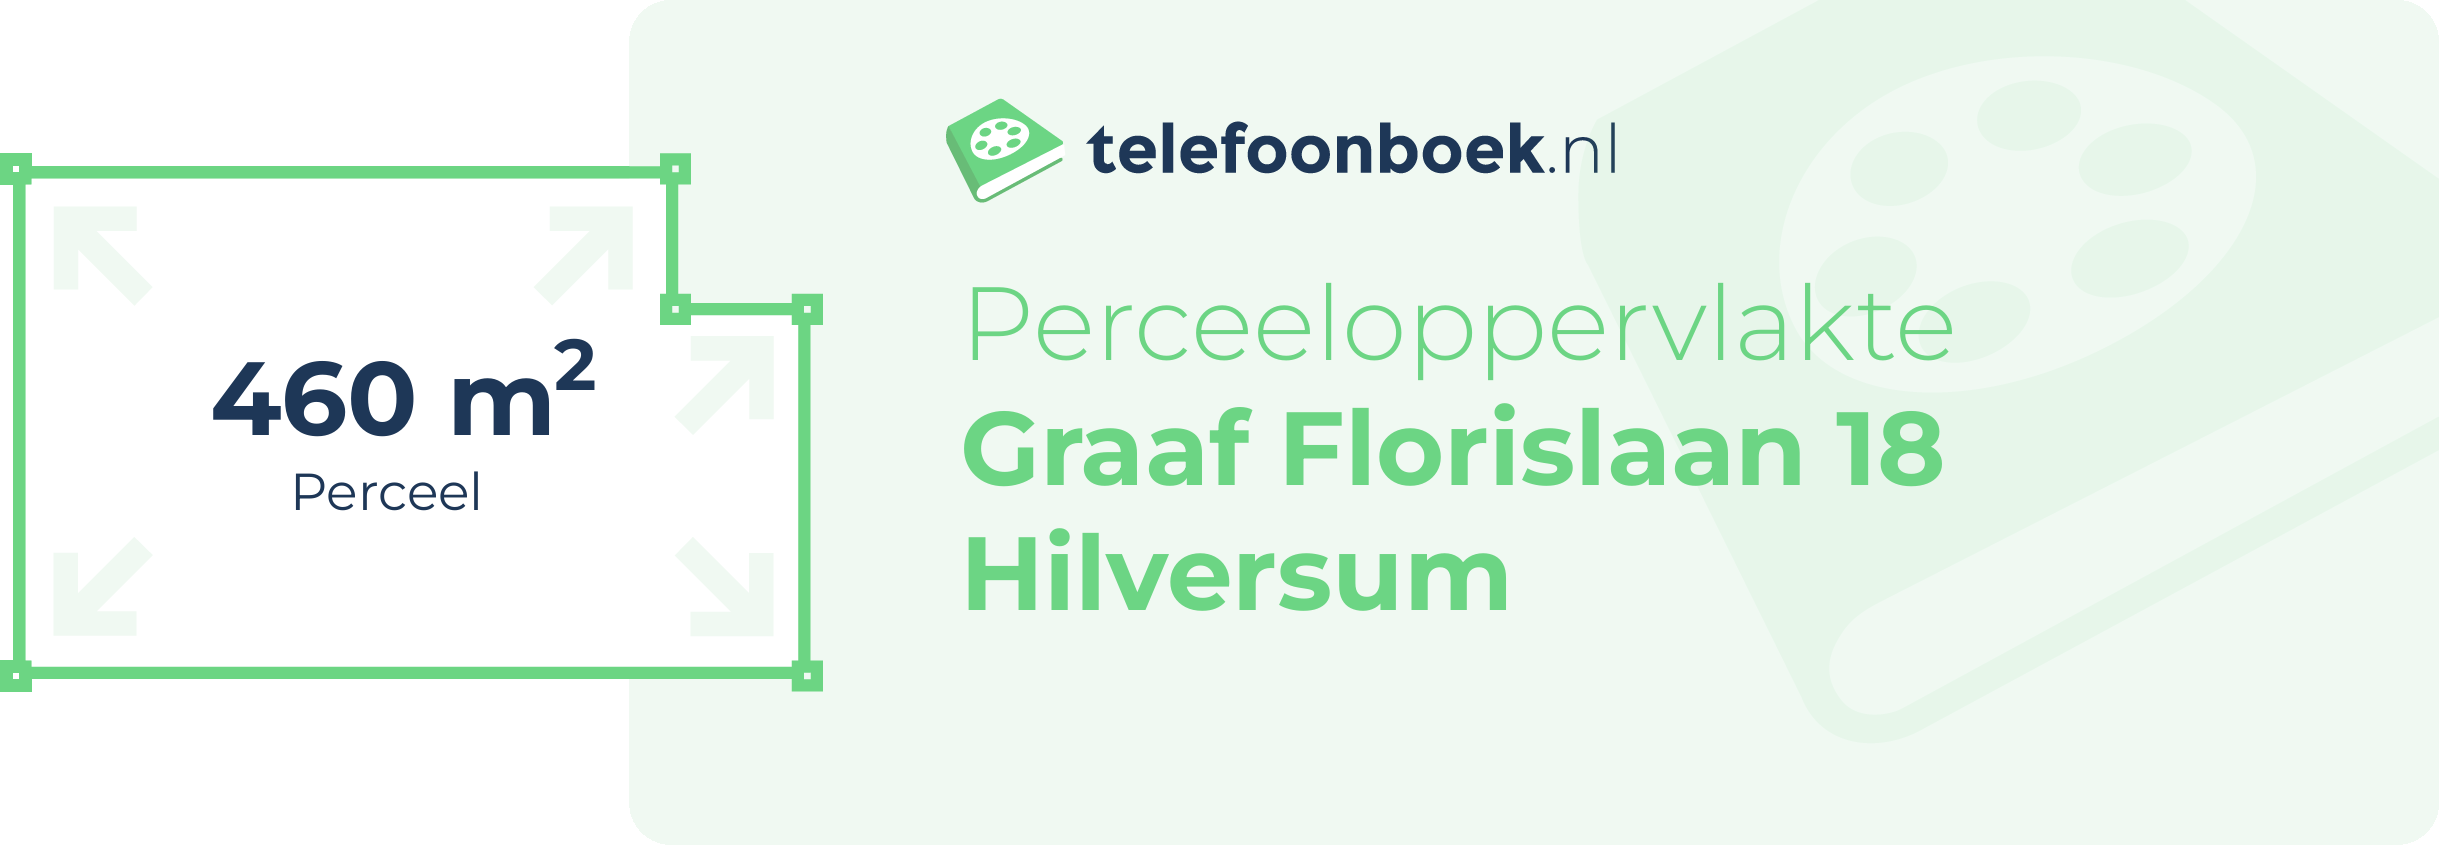 Perceeloppervlakte Graaf Florislaan 18 Hilversum